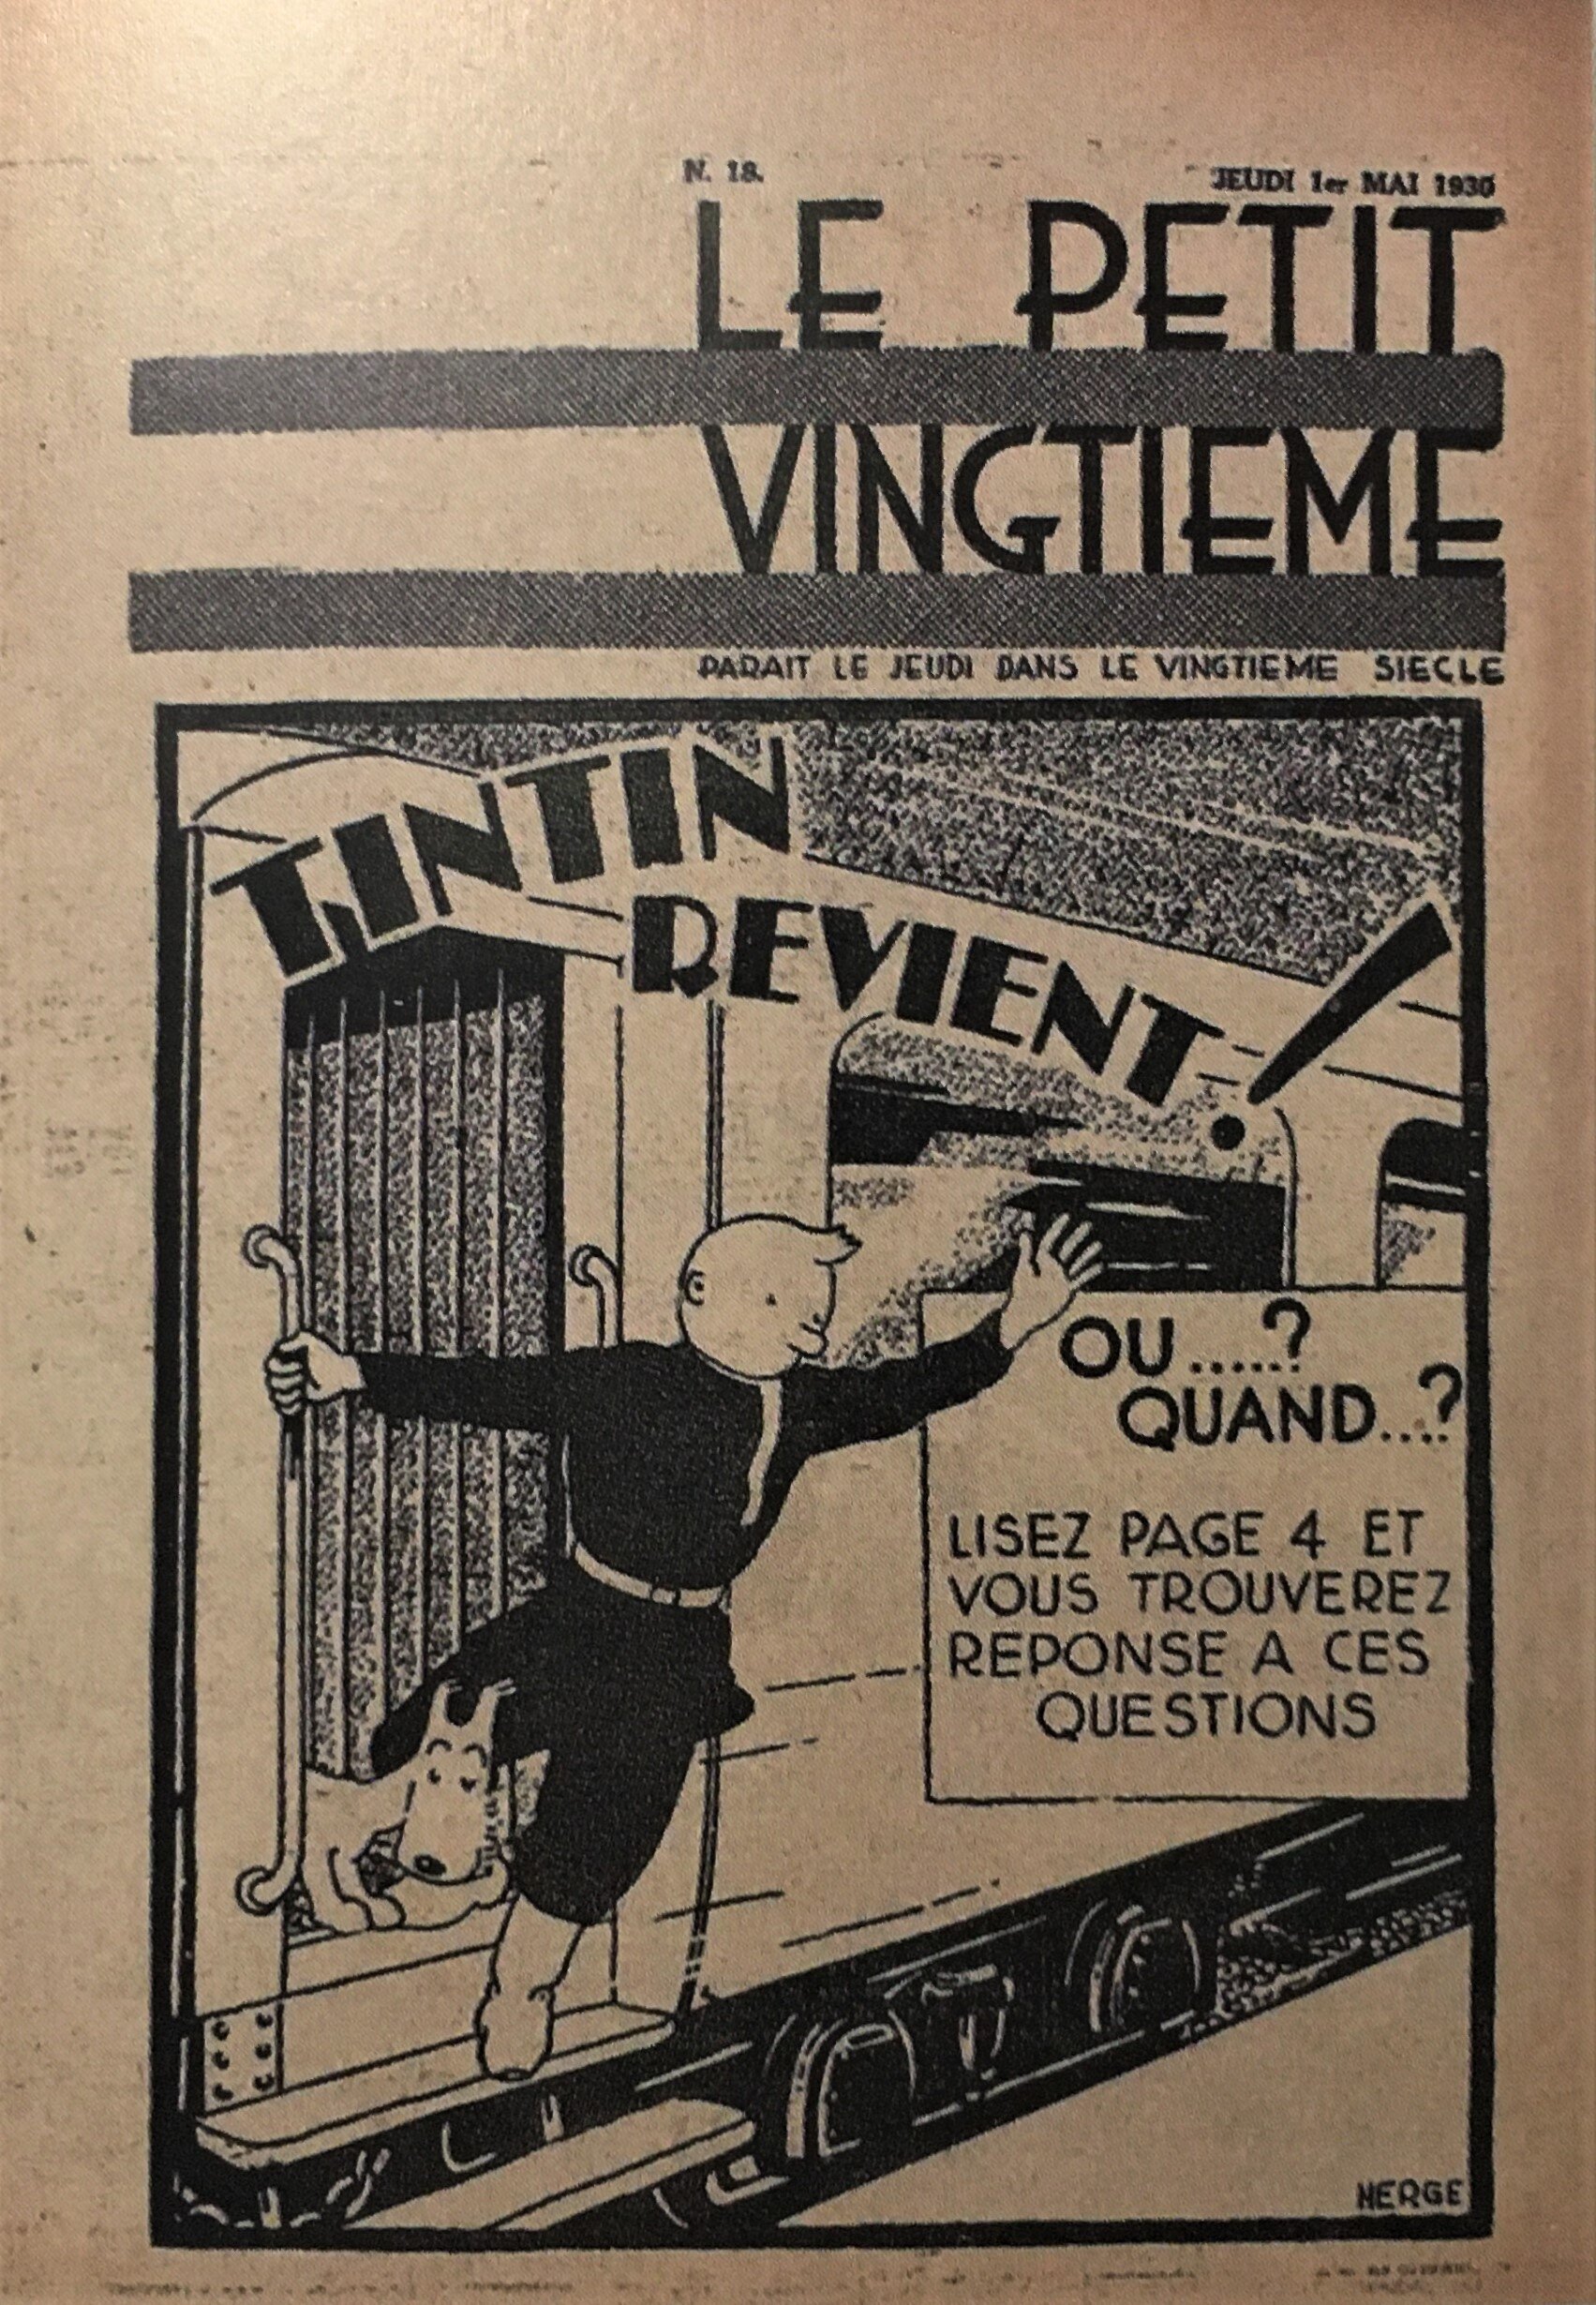  Cover of  Le Petit Vingtieme,  May 1, 1930. 